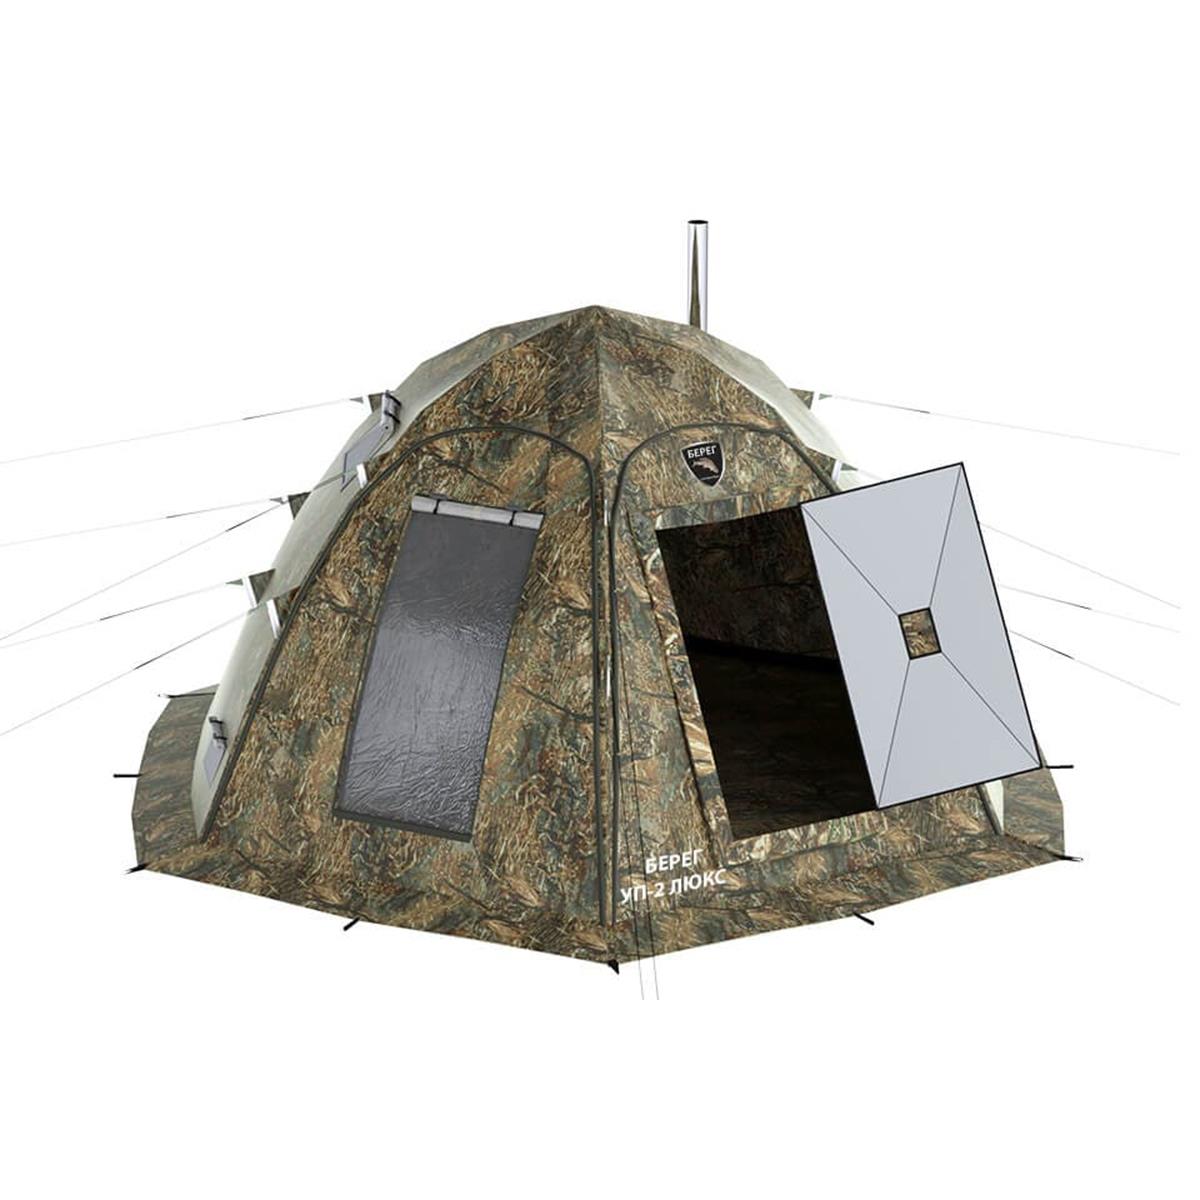 Универсальная палатка УП-2 Люкс прут 10 мм. Камыш, Берег металлические оцинкованные колышки комплект агро